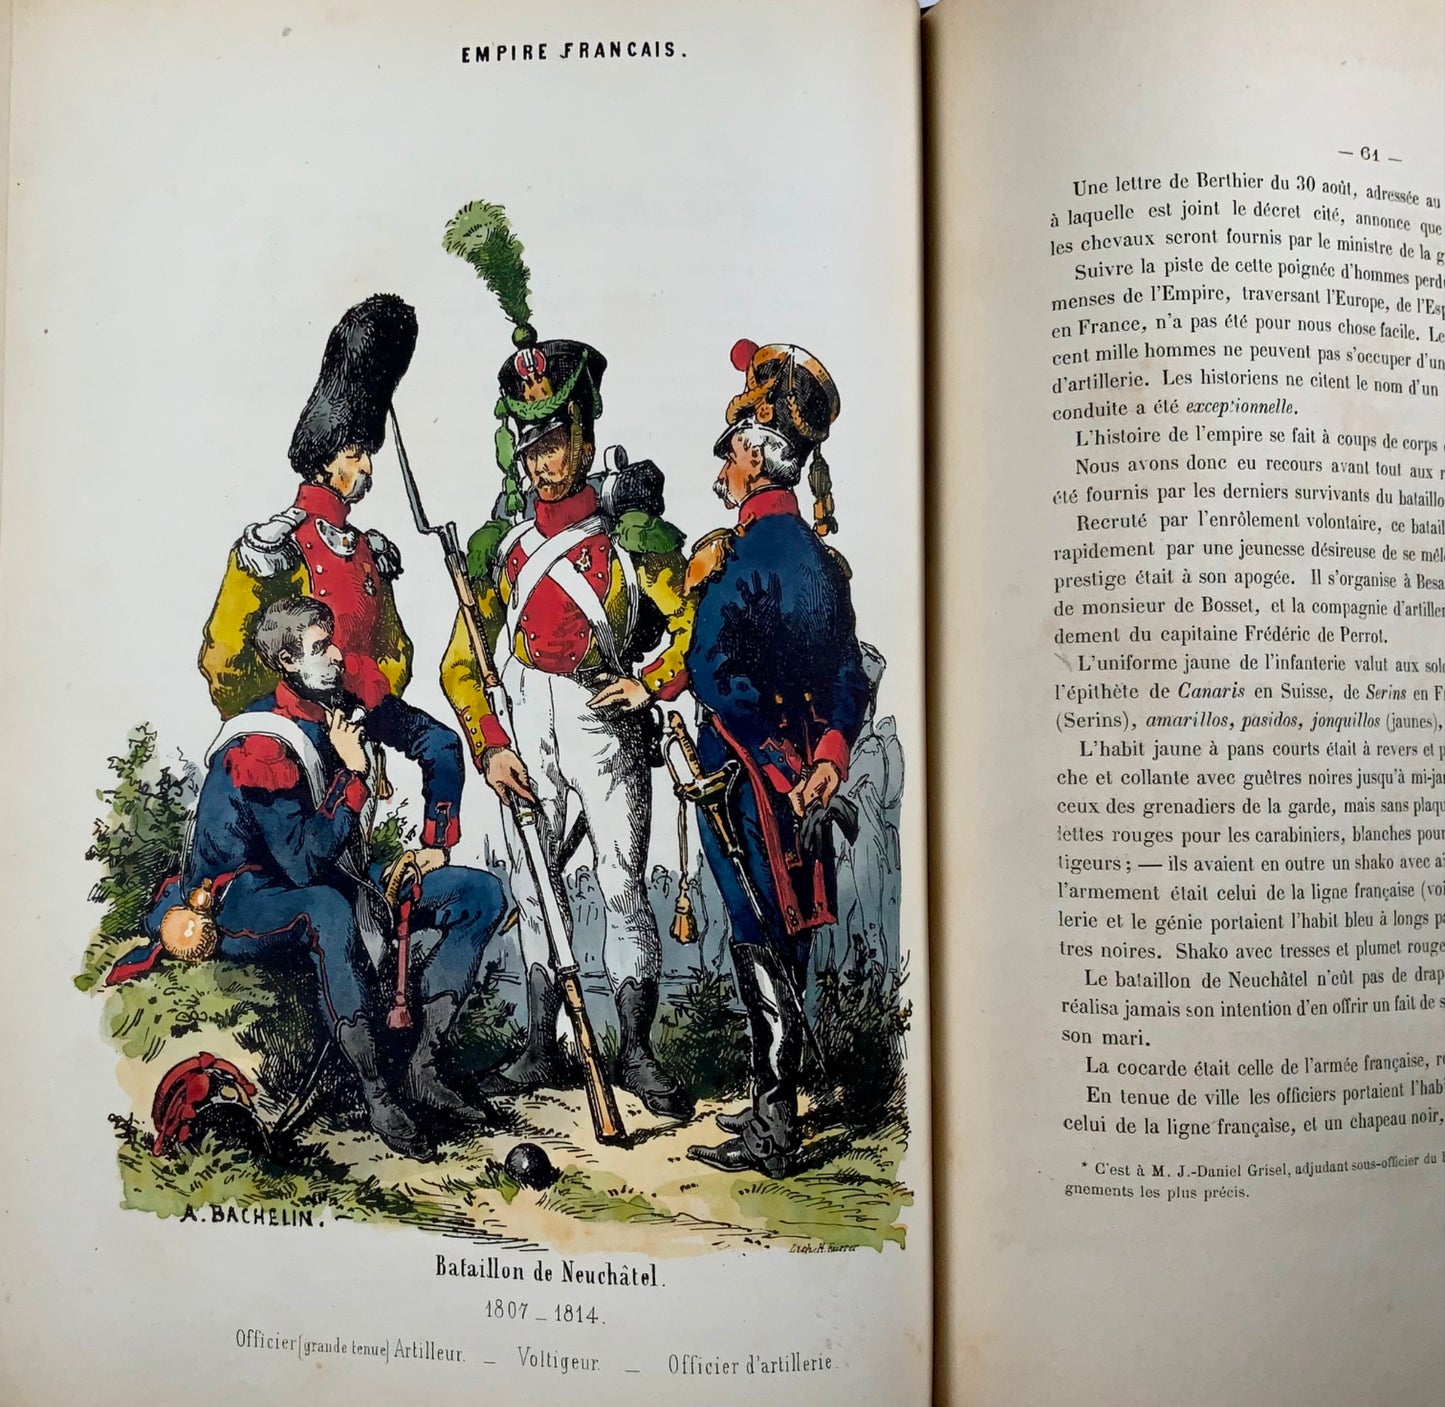 1831 Sort de la principauté de Neuchâtel, Suisse. Copie d'Earl Roseberry. Ex-libris.